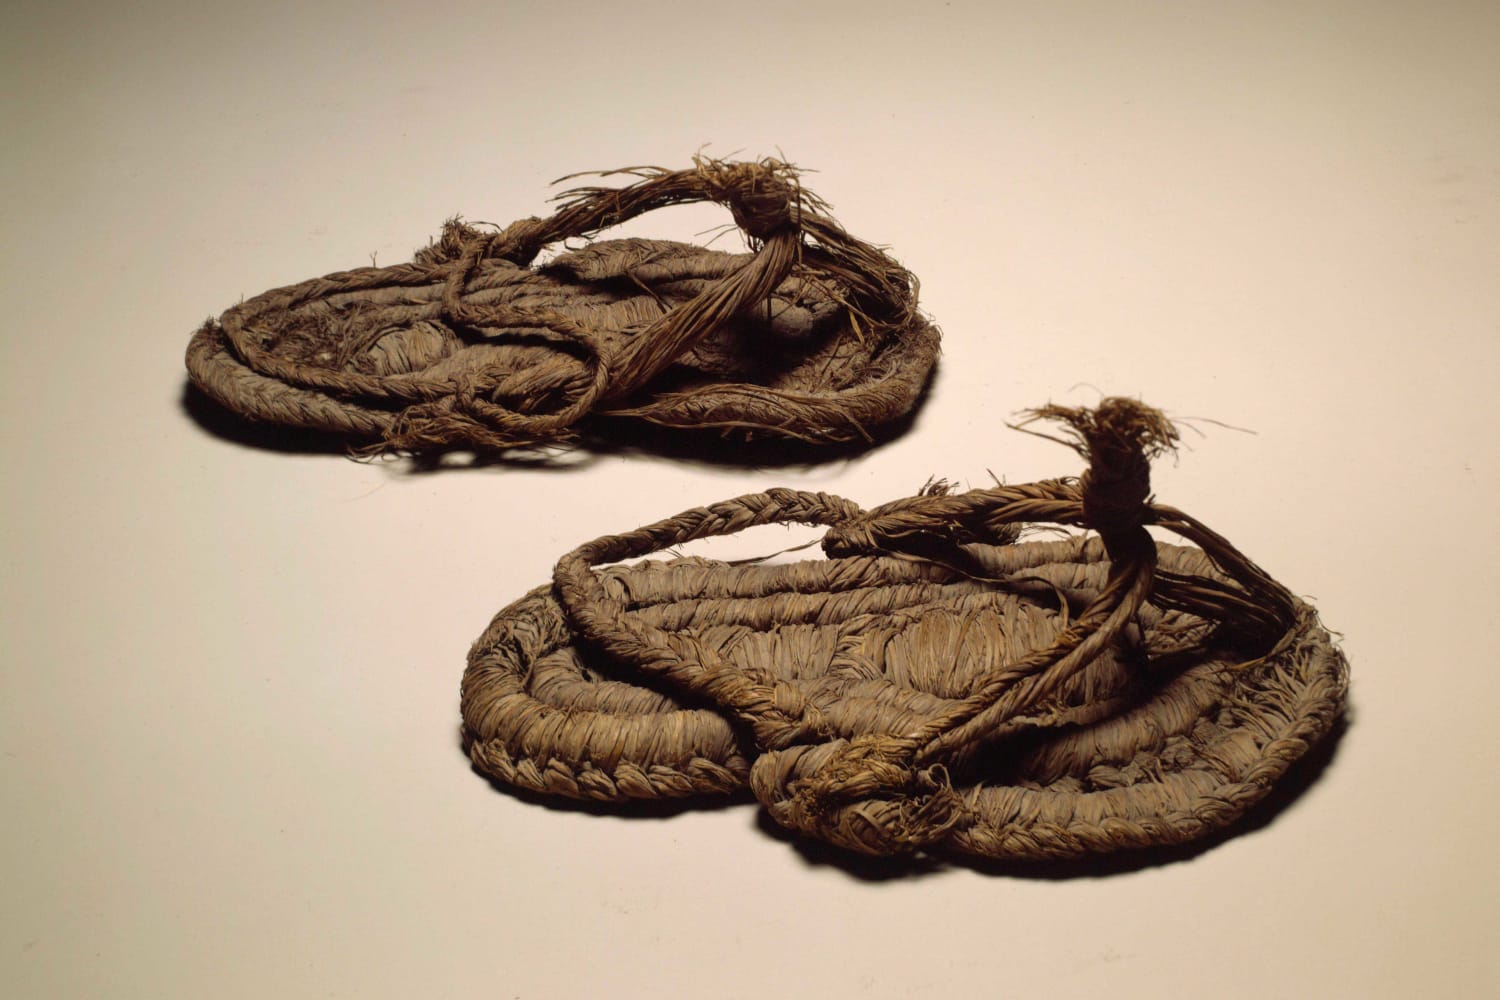 أقدم حذاء في العالم؟  كشفت الأبحاث أن الصنادل الموجودة في كهف الخفافيش عمرها آلاف السنين